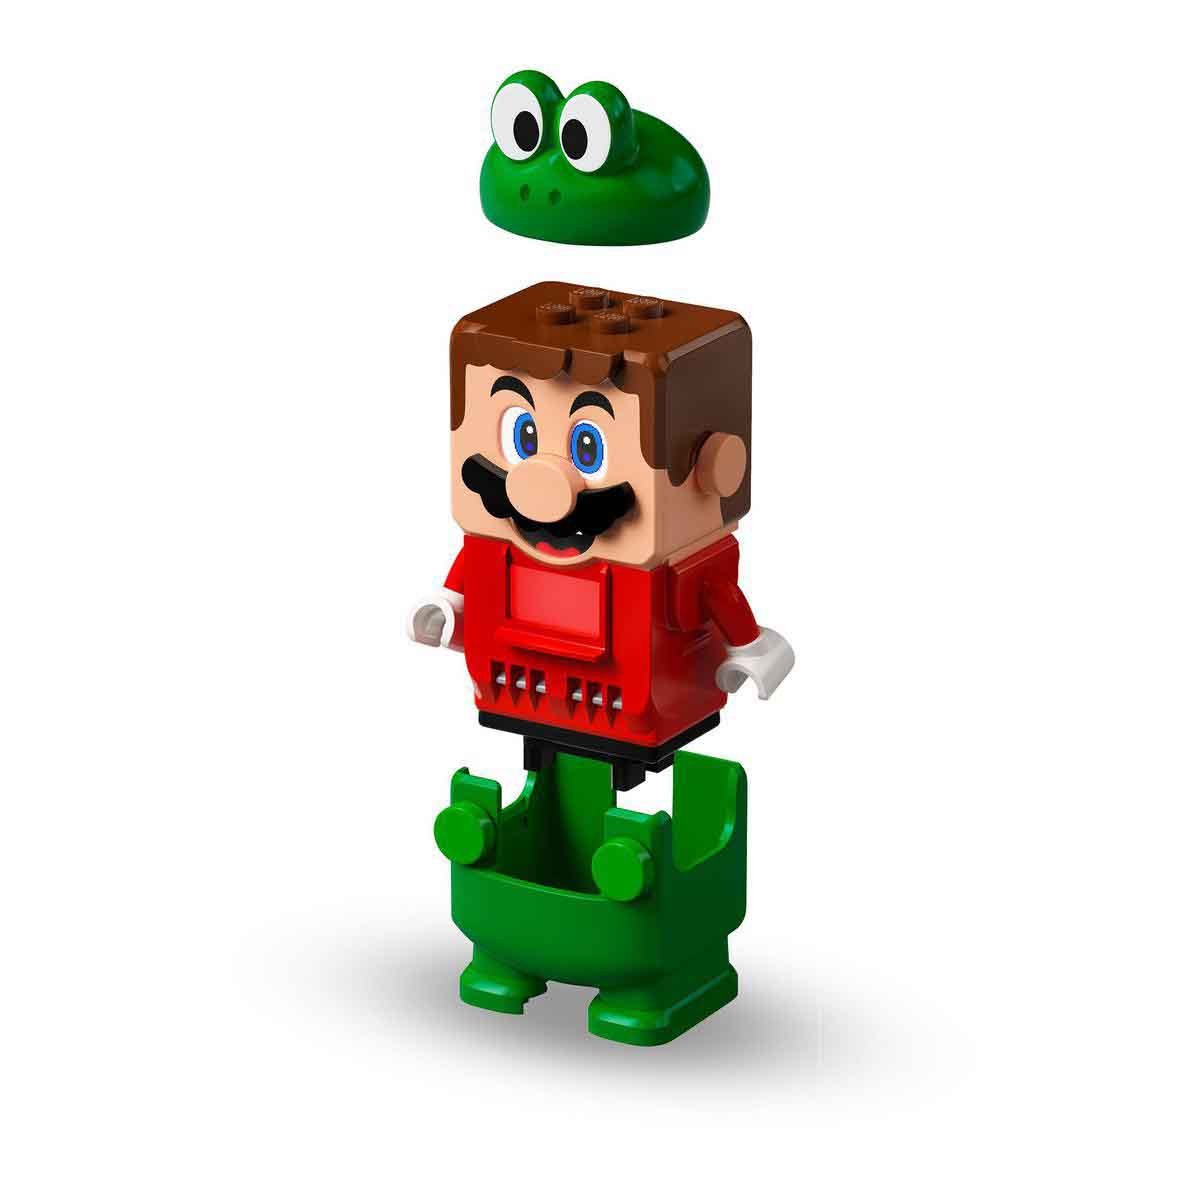 Köp LEGO Super Mario 71392 Frog Mario – Boostpaket på lekia.se